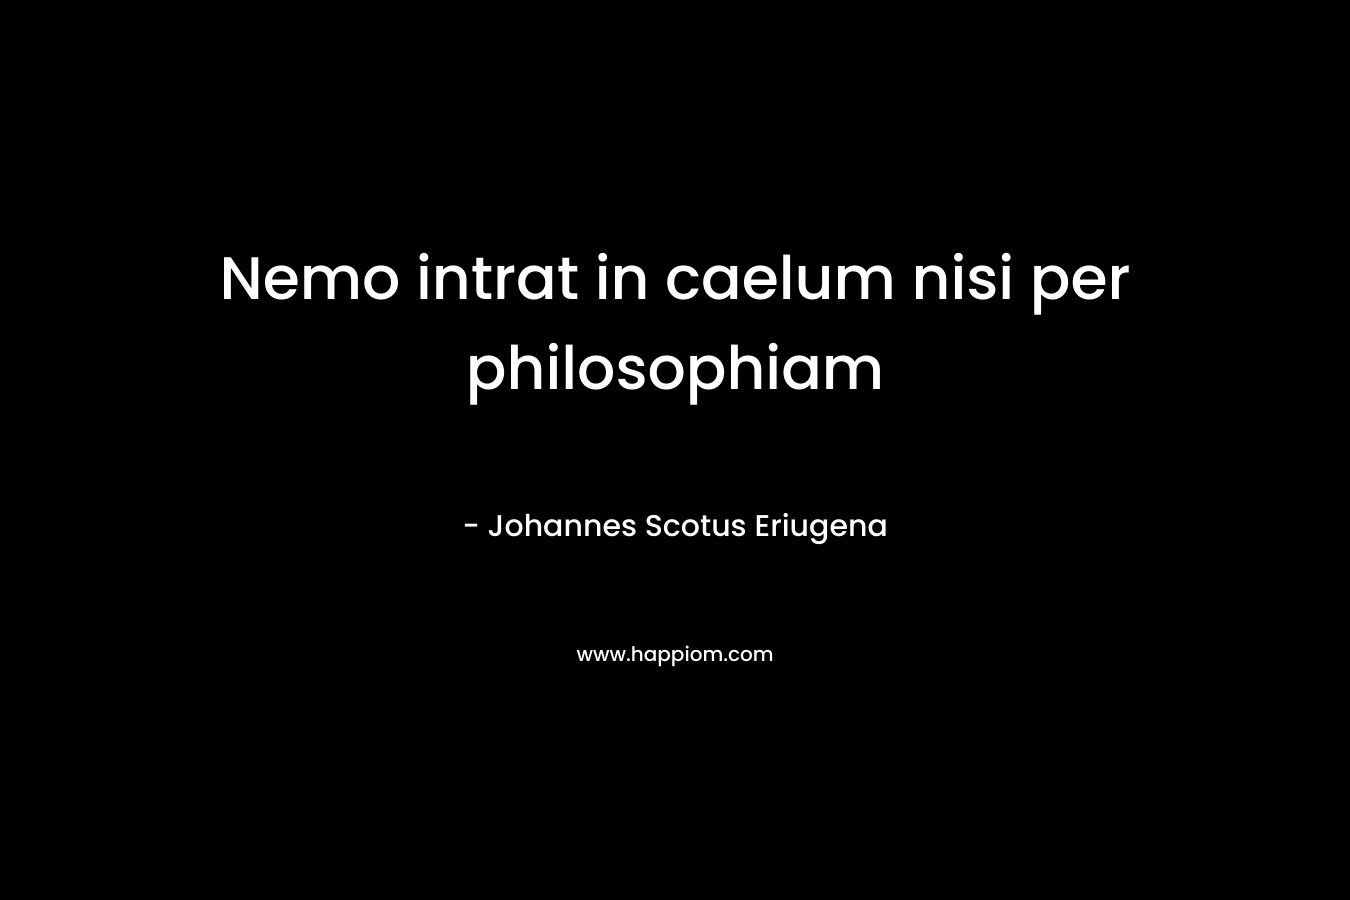 Nemo intrat in caelum nisi per philosophiam